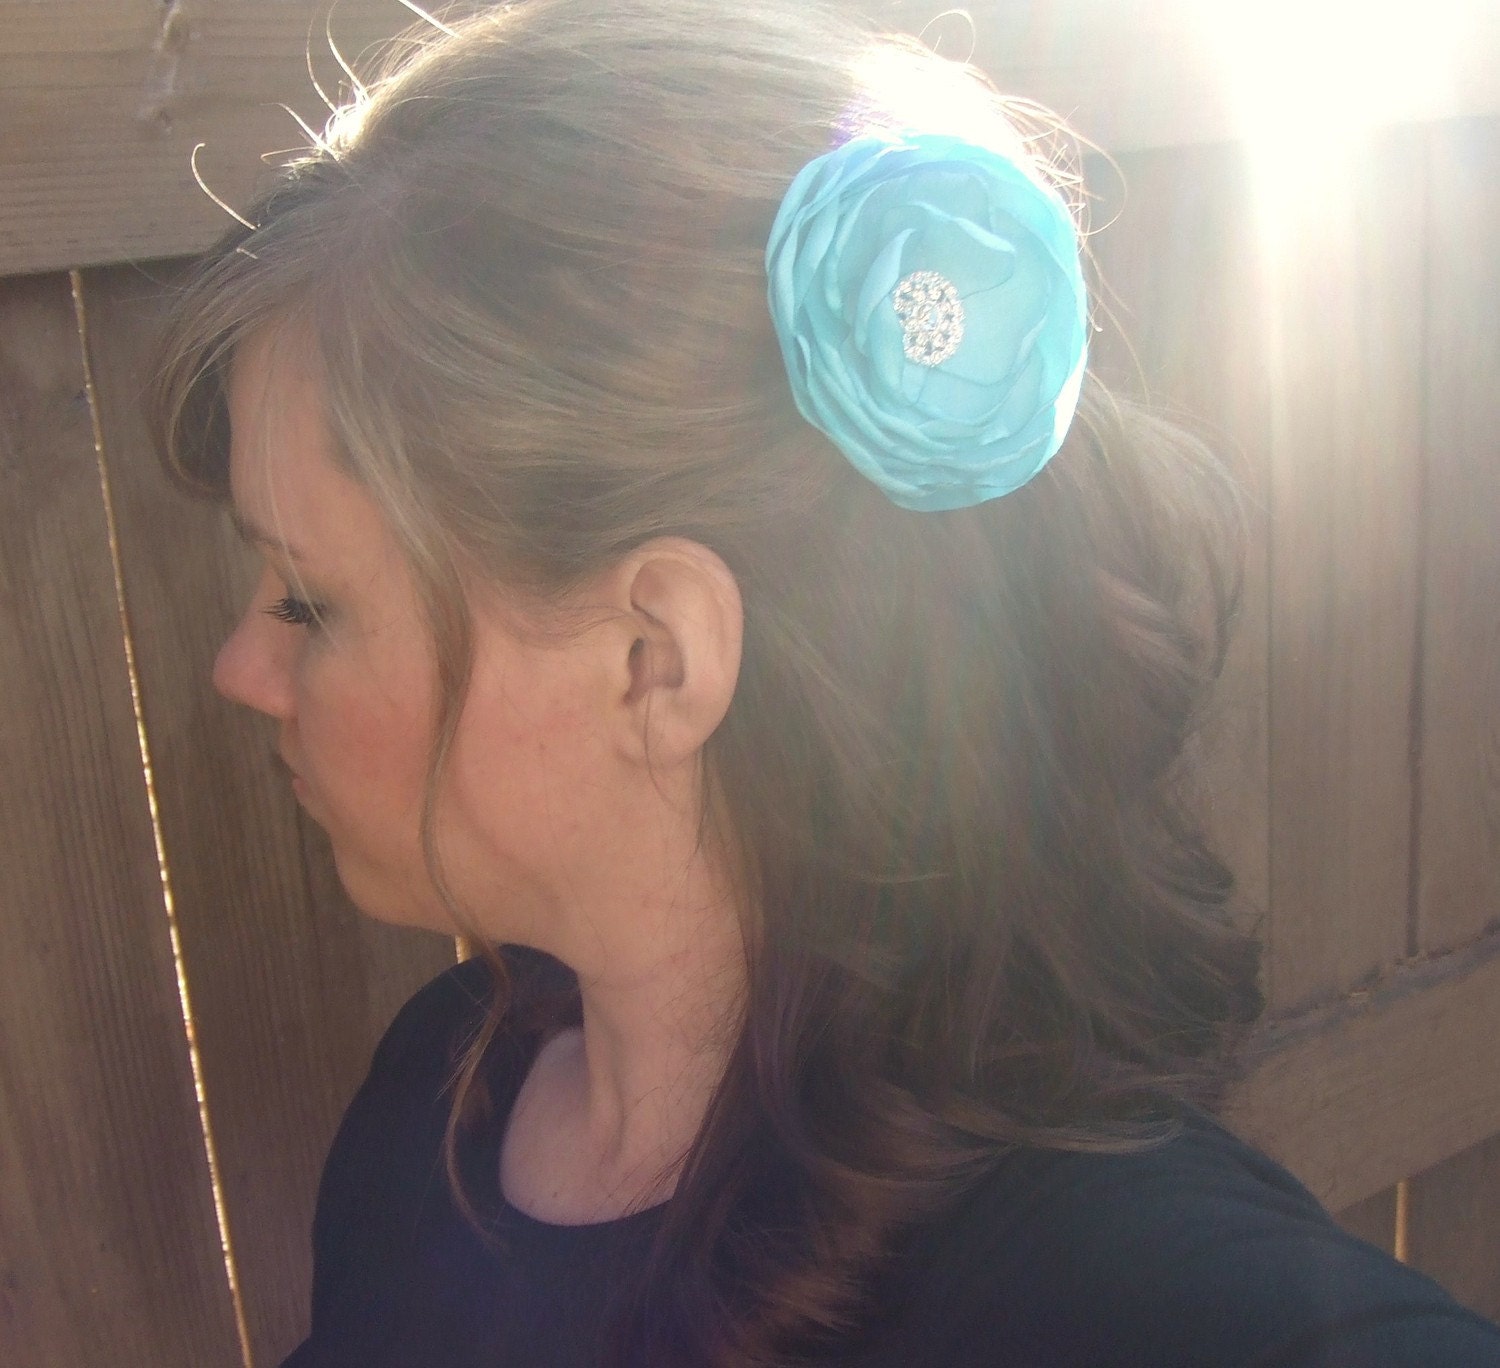 Tiffany Blue Wedding Flower Hair Clip - Bridal Accessory